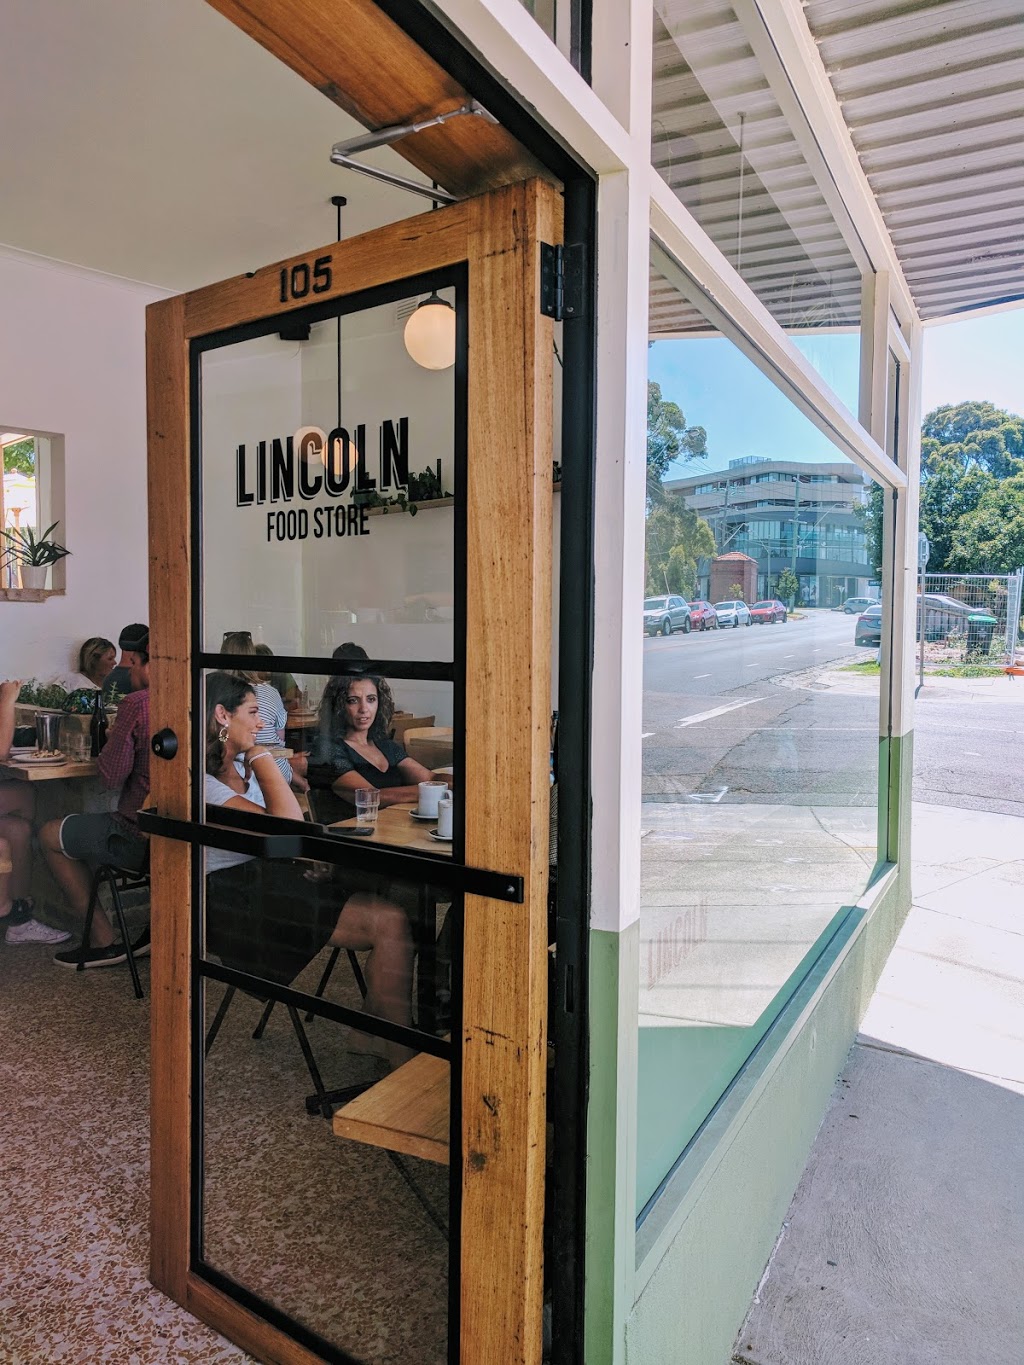 Lincoln Food Store | 105 Lincoln Rd, Essendon VIC 3040, Australia